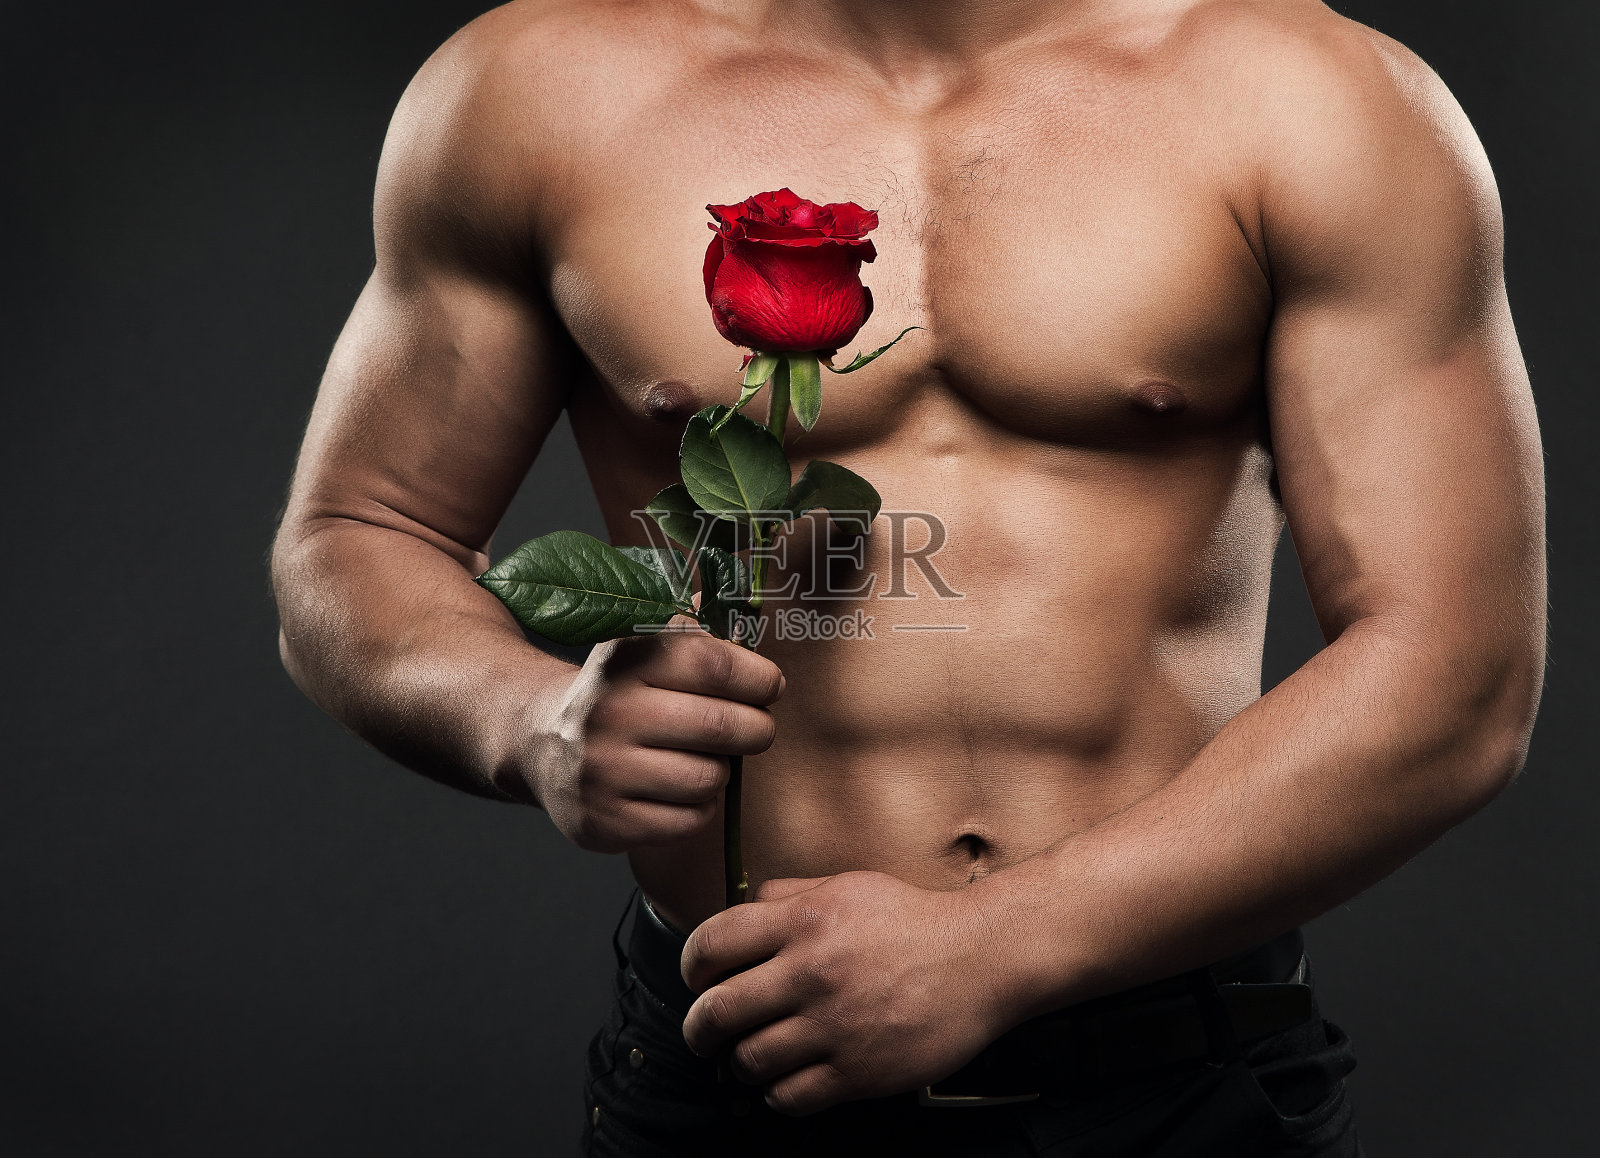 肌肉裸上身男子躯干与玫瑰花，性感的运动员男孩裸体工作室拍摄照片摄影图片